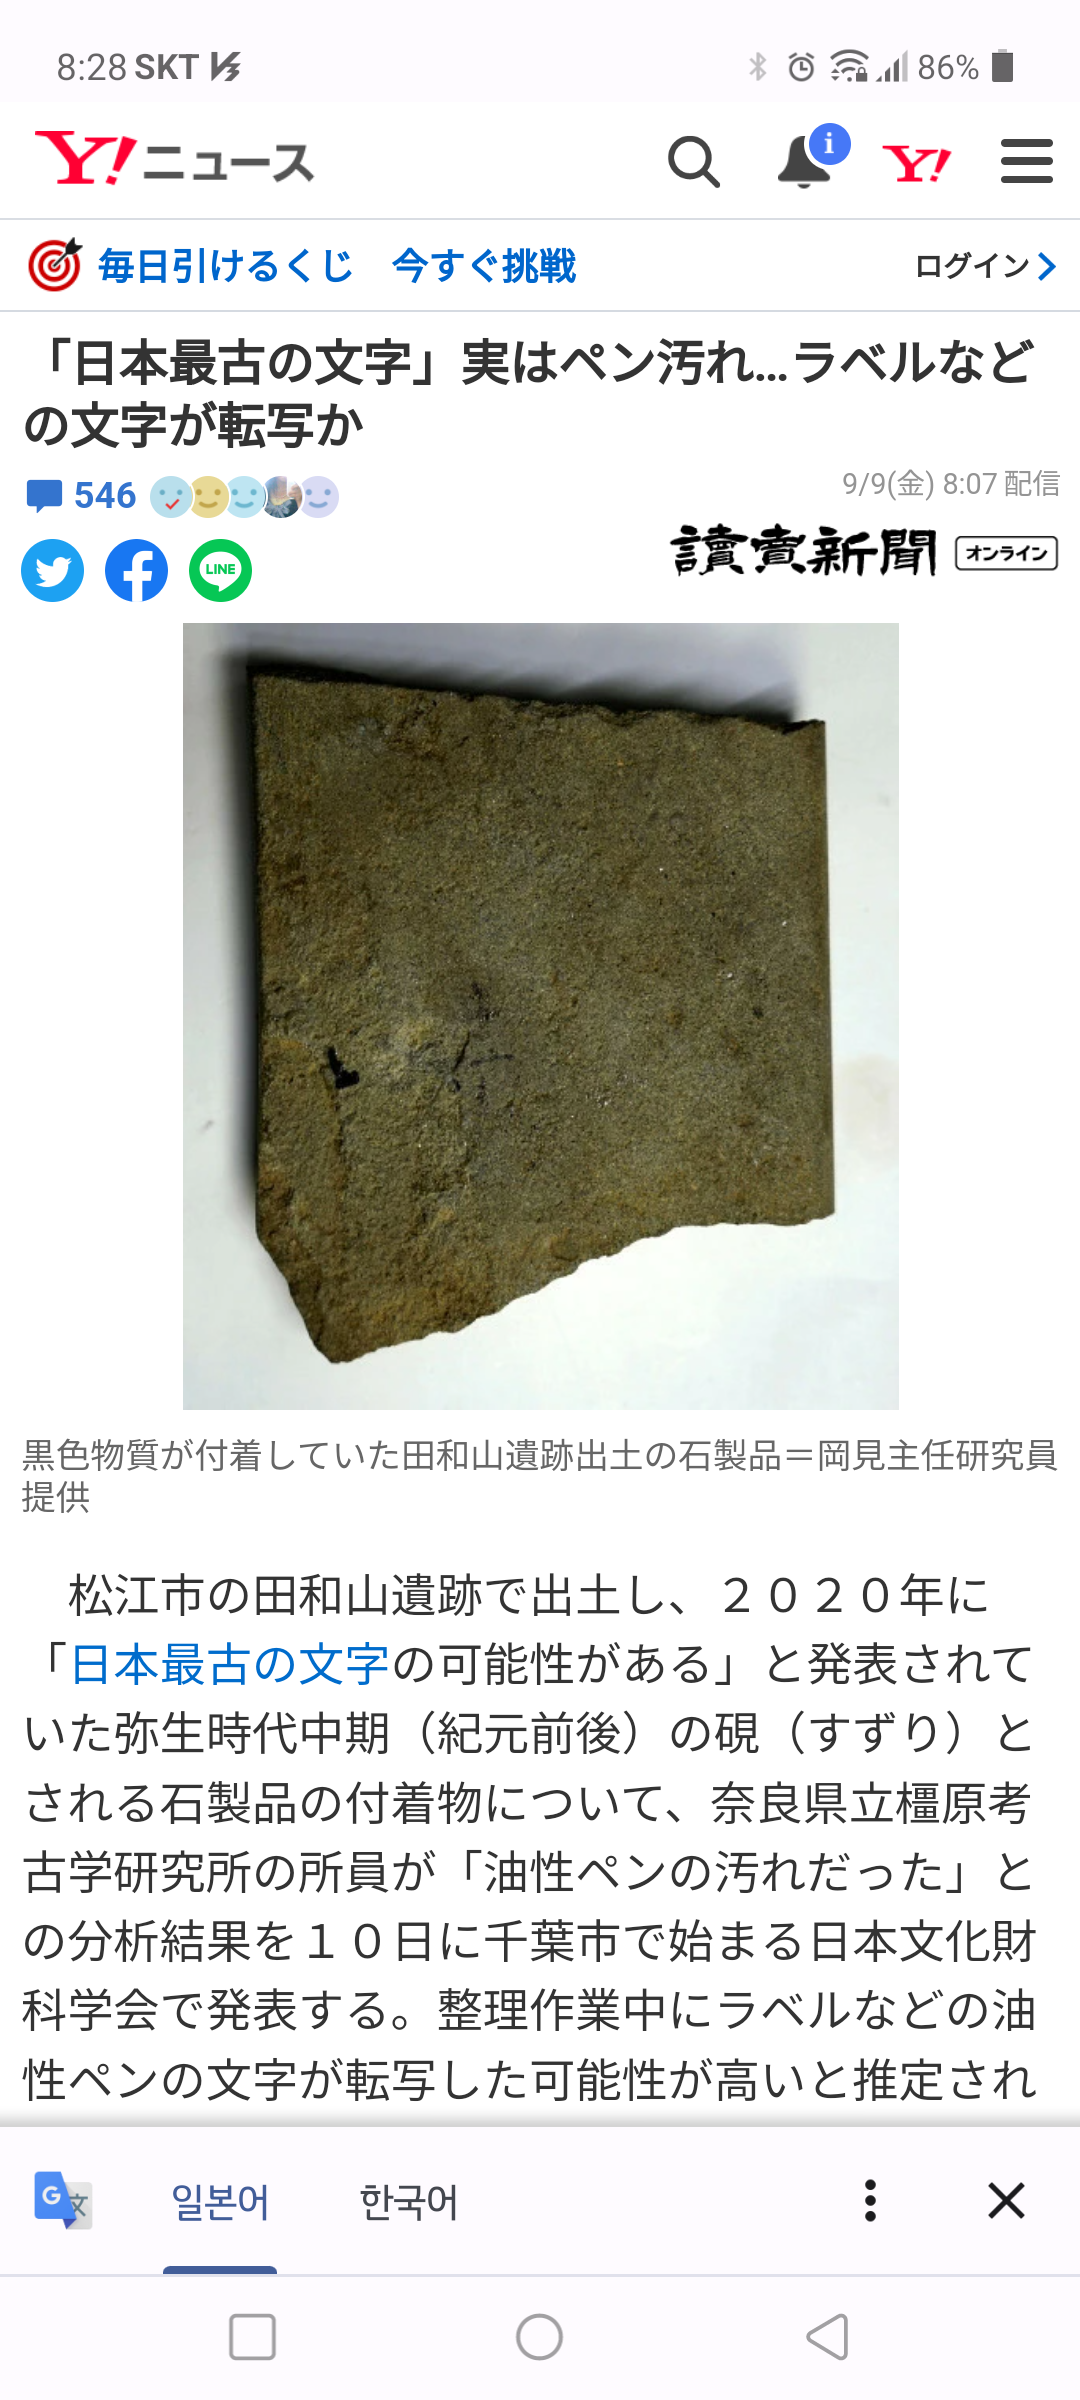 17 일본에서 가장 오래된 문자.png